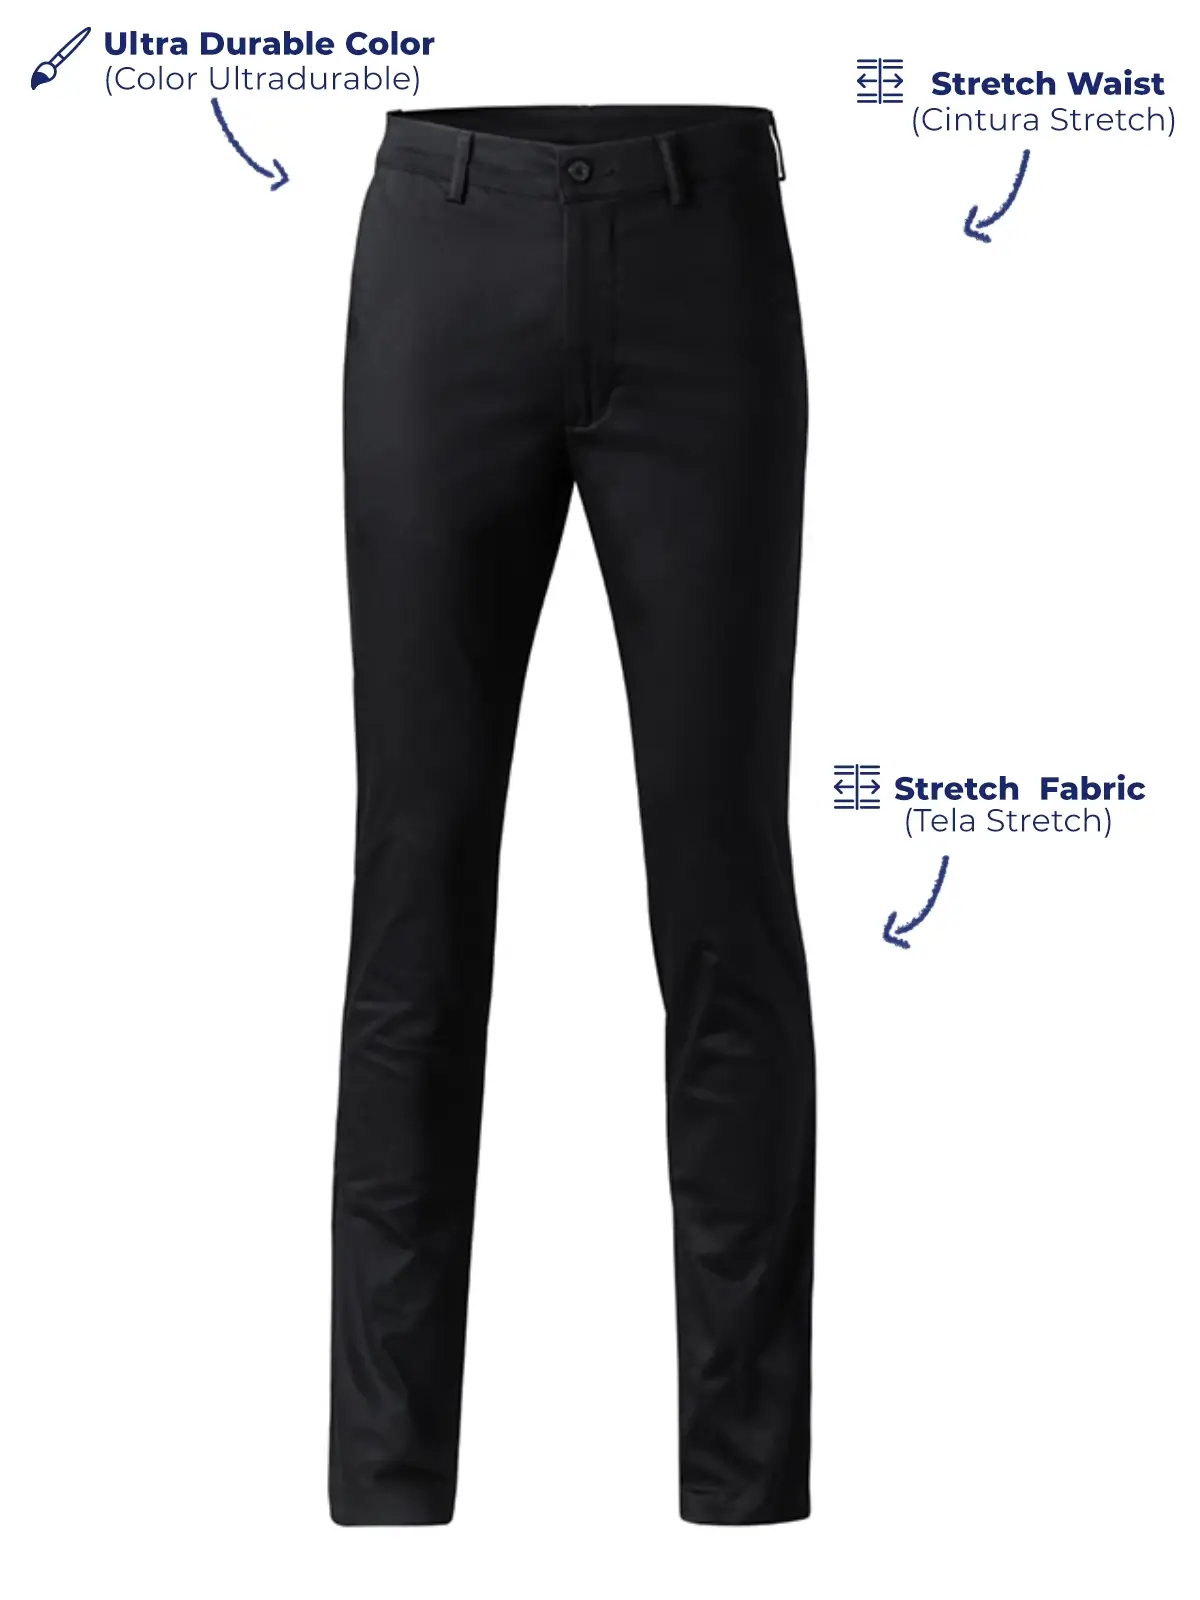 Pantalones de vestir DOCA . Ideales para ejecutivos, personal de oficina,  reuniones casuales, entre otros ➪Confeccionada en tela gabar